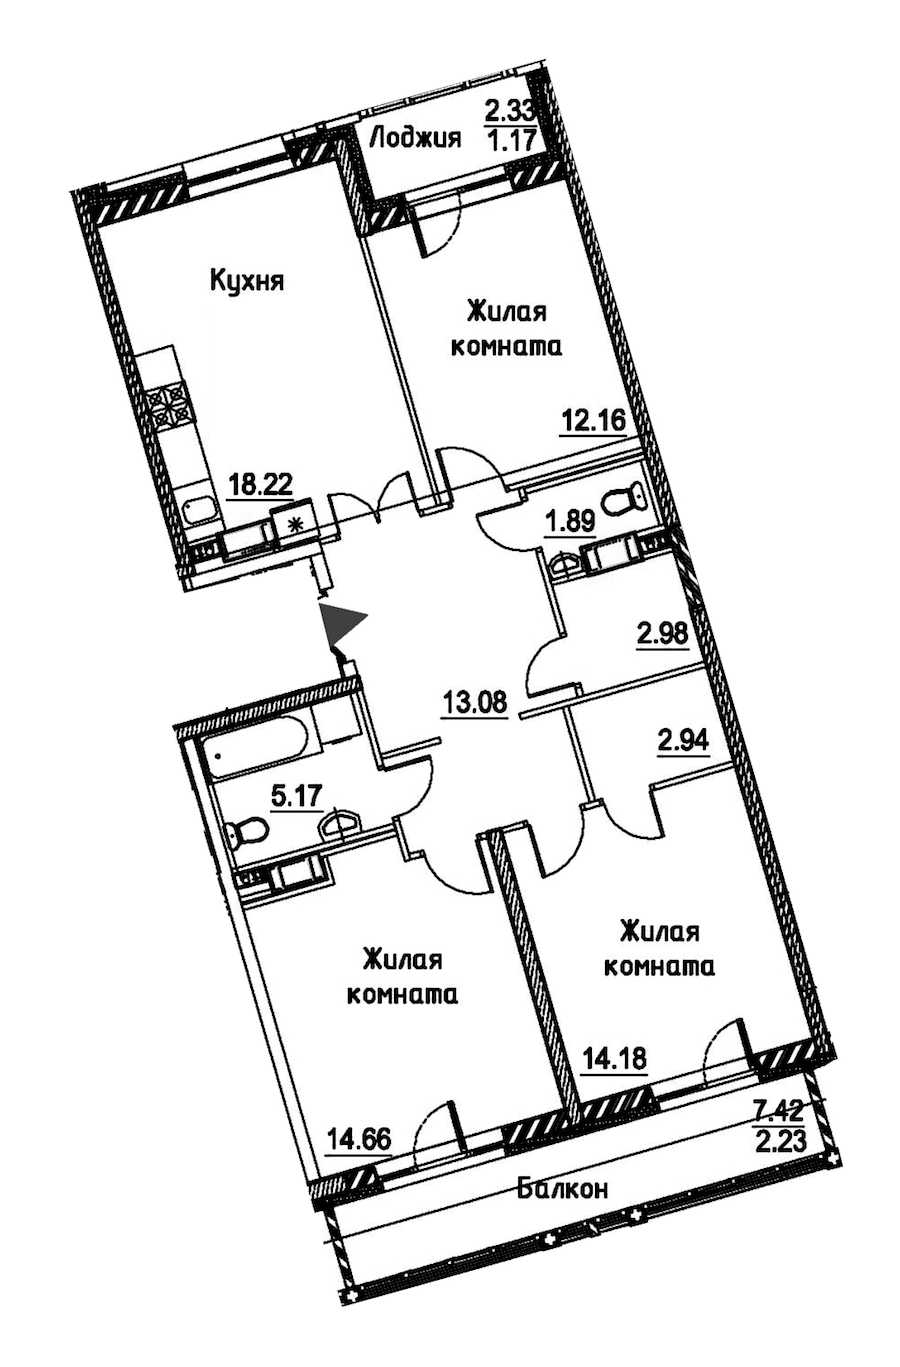 Двухкомнатная квартира в : площадь 88.68 м2 , этаж: 12 – купить в Санкт-Петербурге